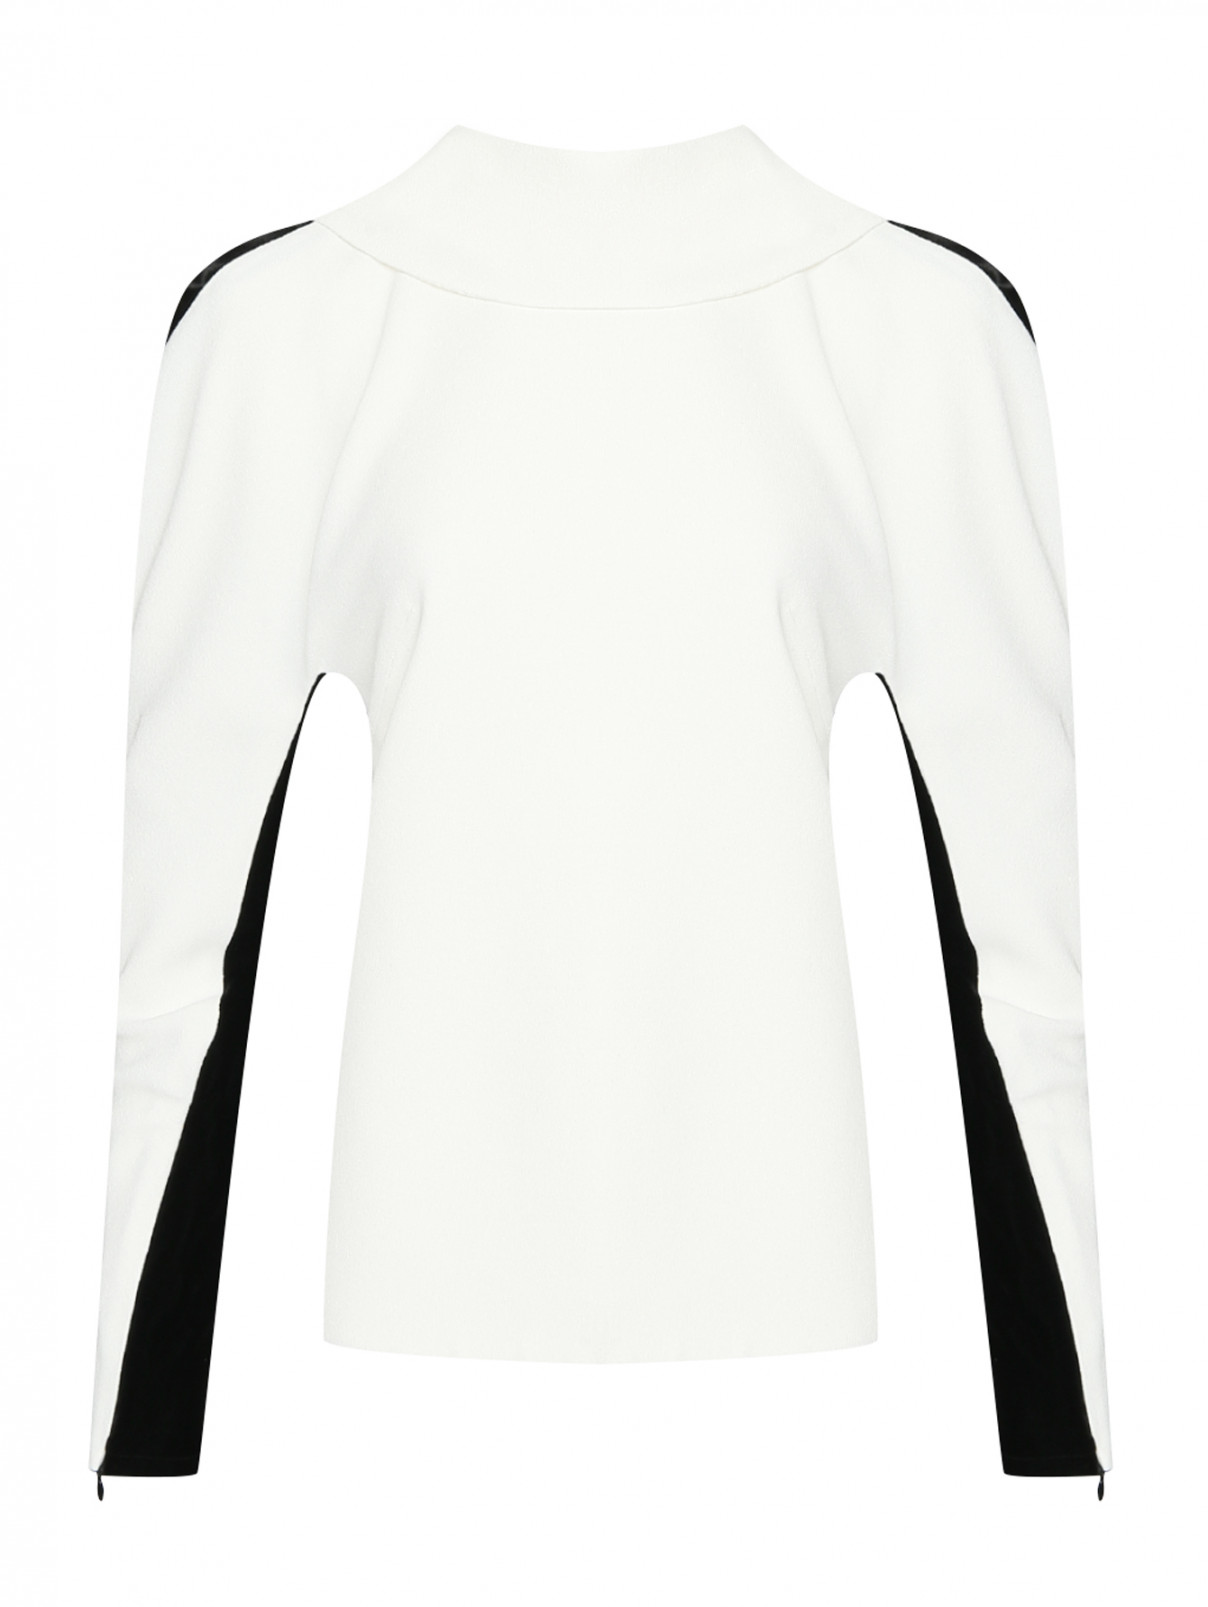 Комбинированная блуза с декоративным воротником Proenza Schouler  –  Общий вид  – Цвет:  Белый